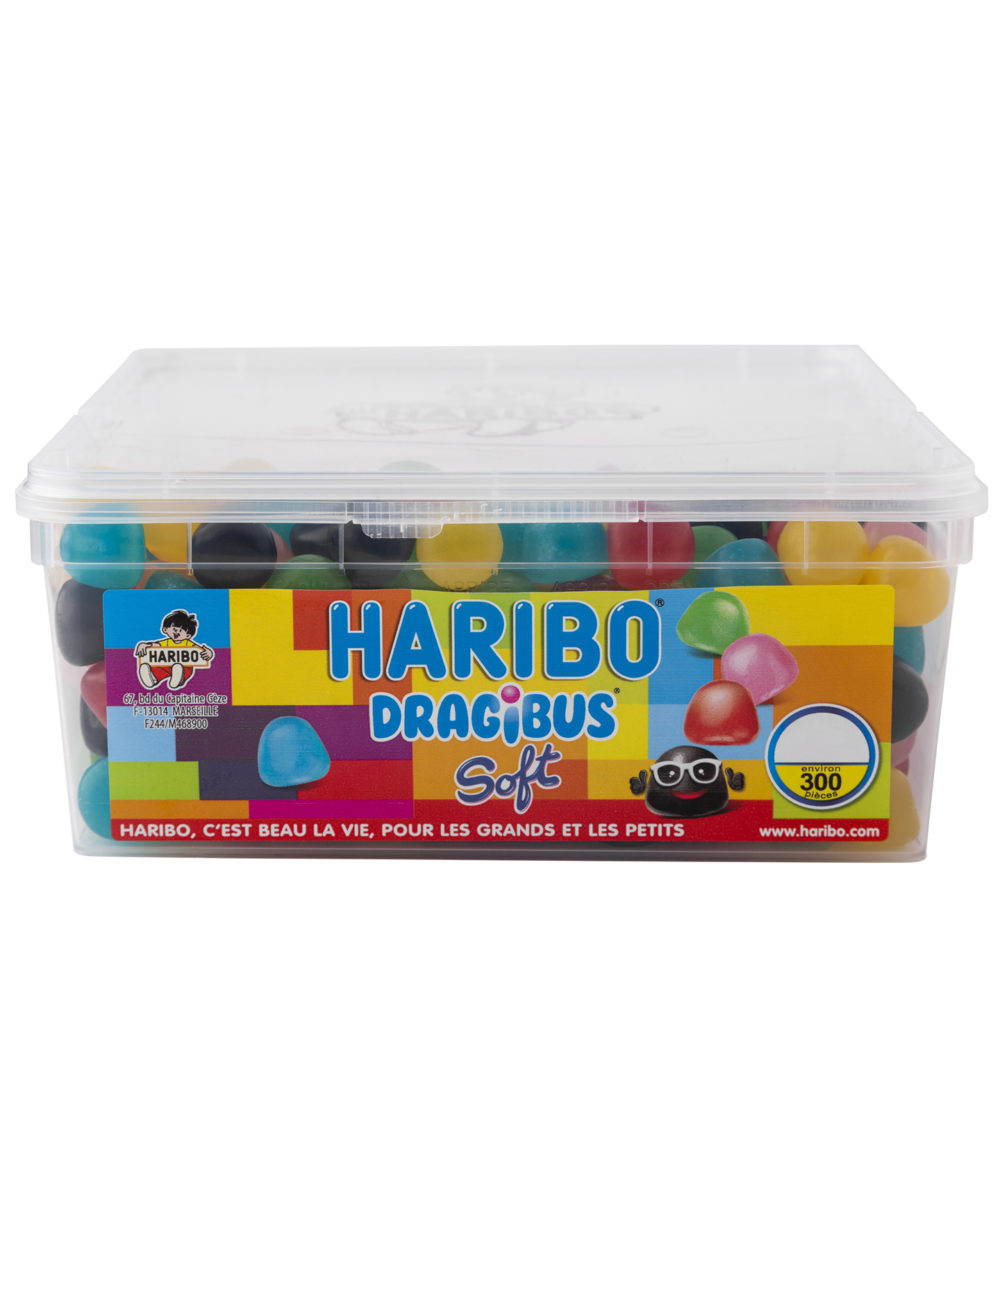 Haribo Dragibus Soft 1.32kg box